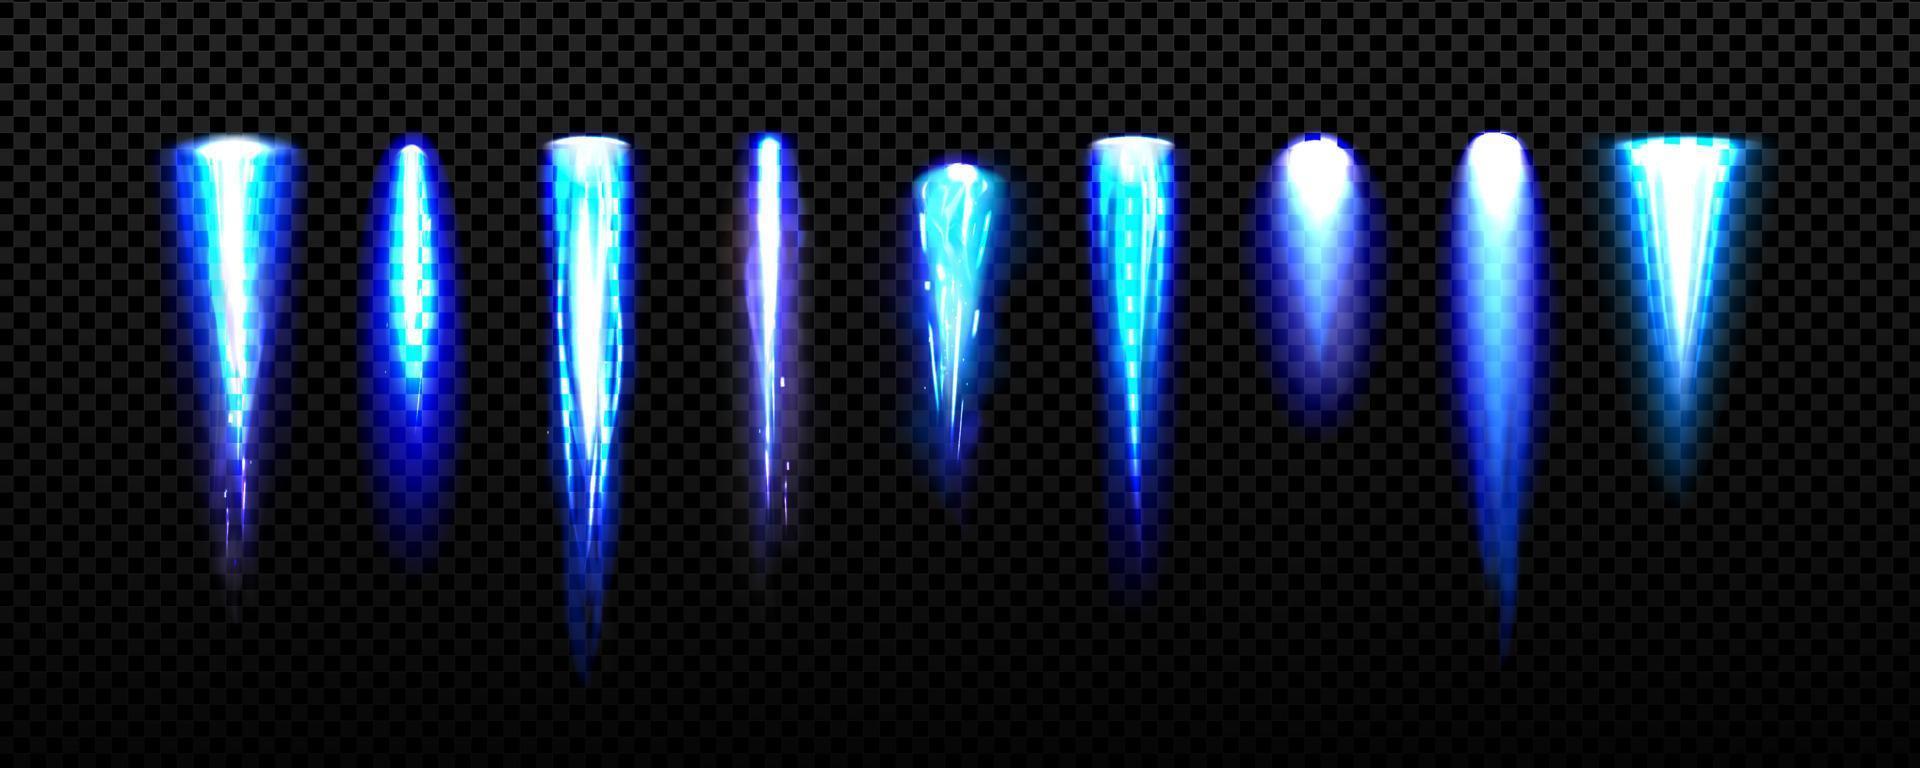 luz jetpack, llamas de fuego azul del cohete espacial vector